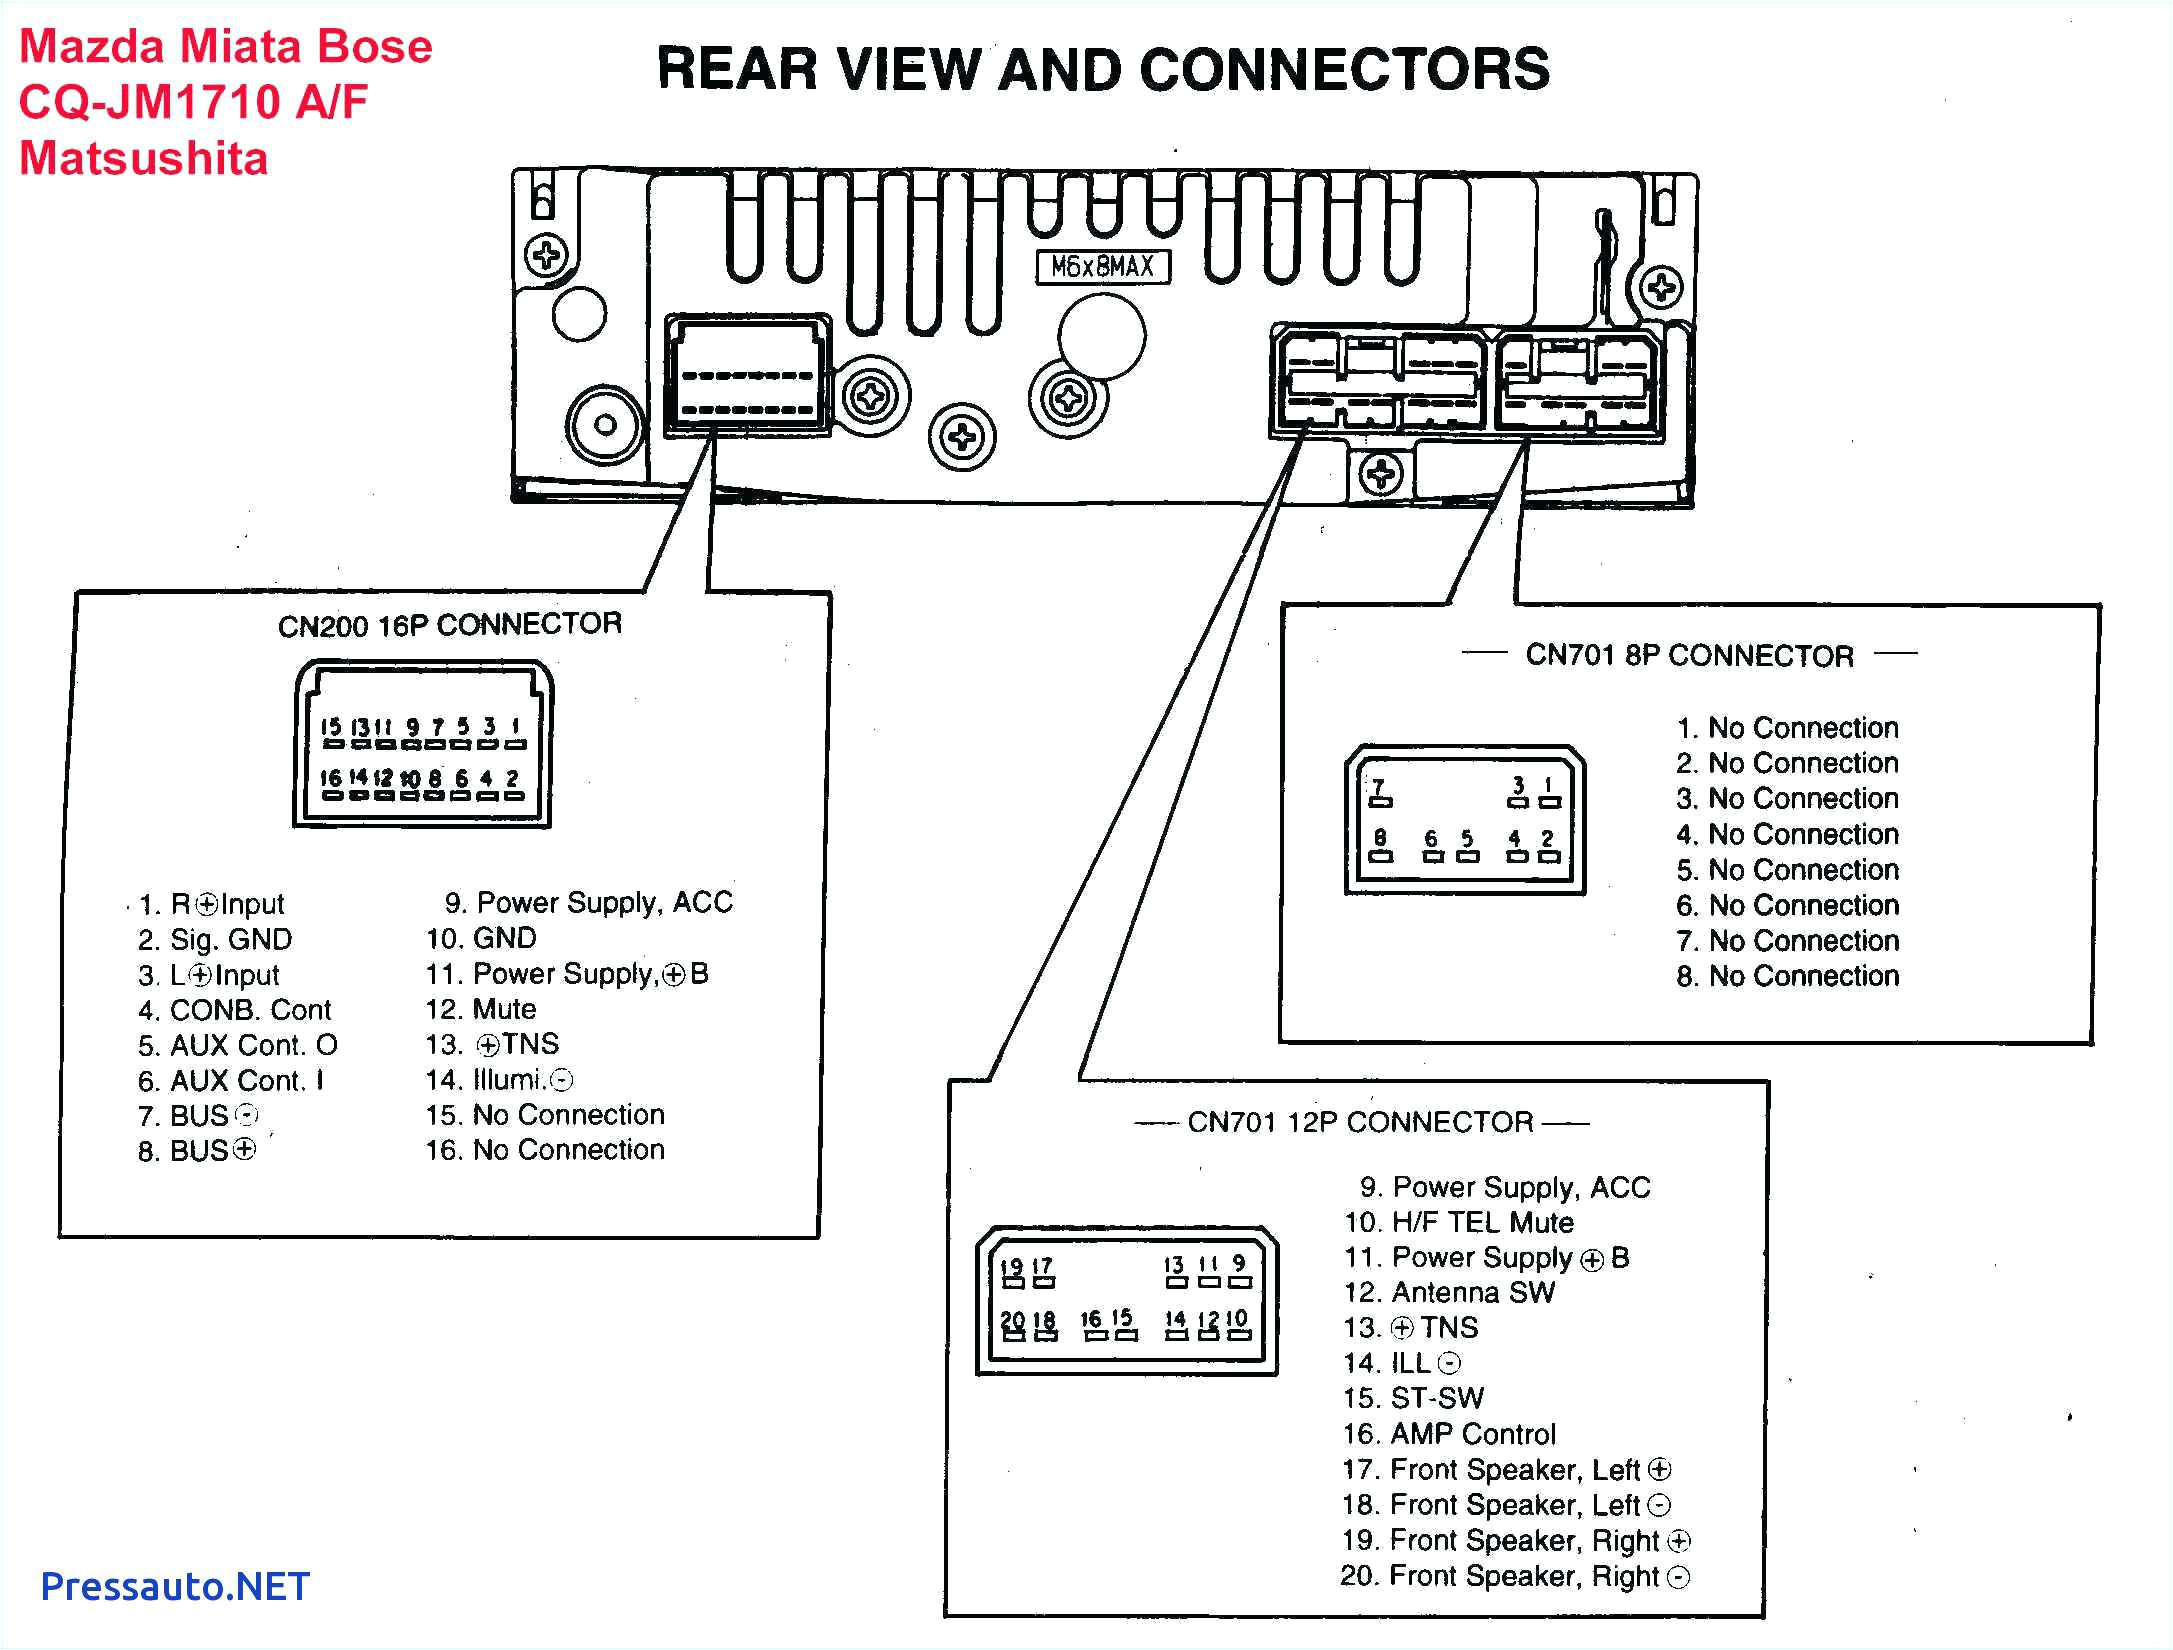 bose cd wiring diagram wiring diagram page bose soundlink wiring diagram bose wiring diagram